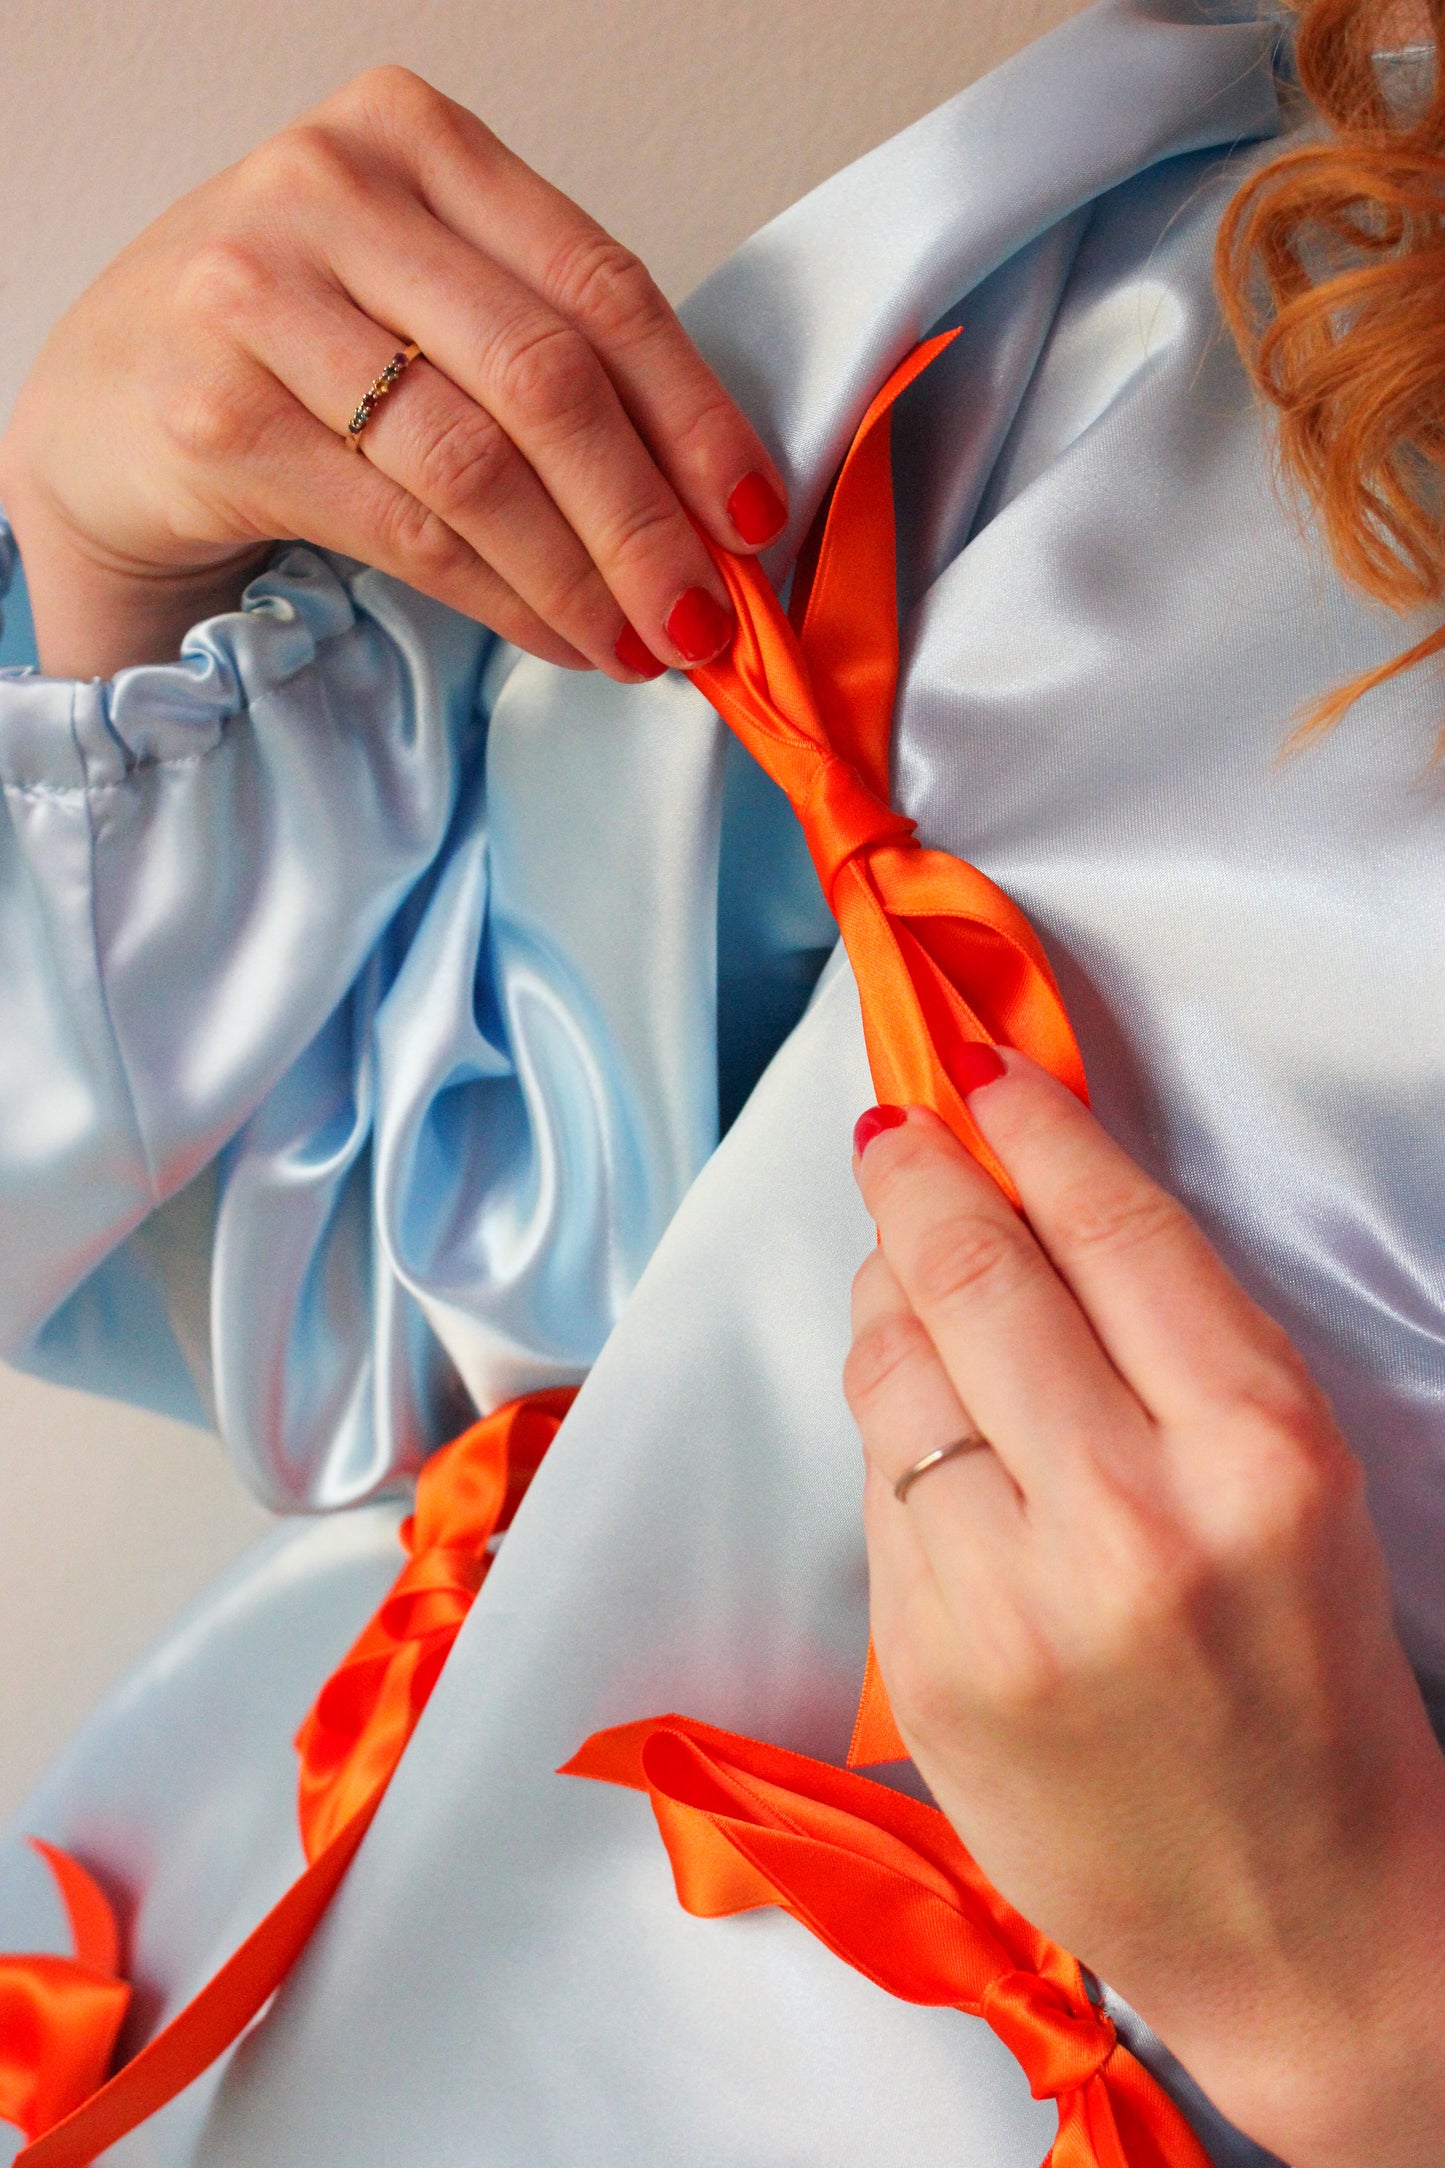 Dazzle Darling Dress – Baby Blue & Fresh Orange Bows